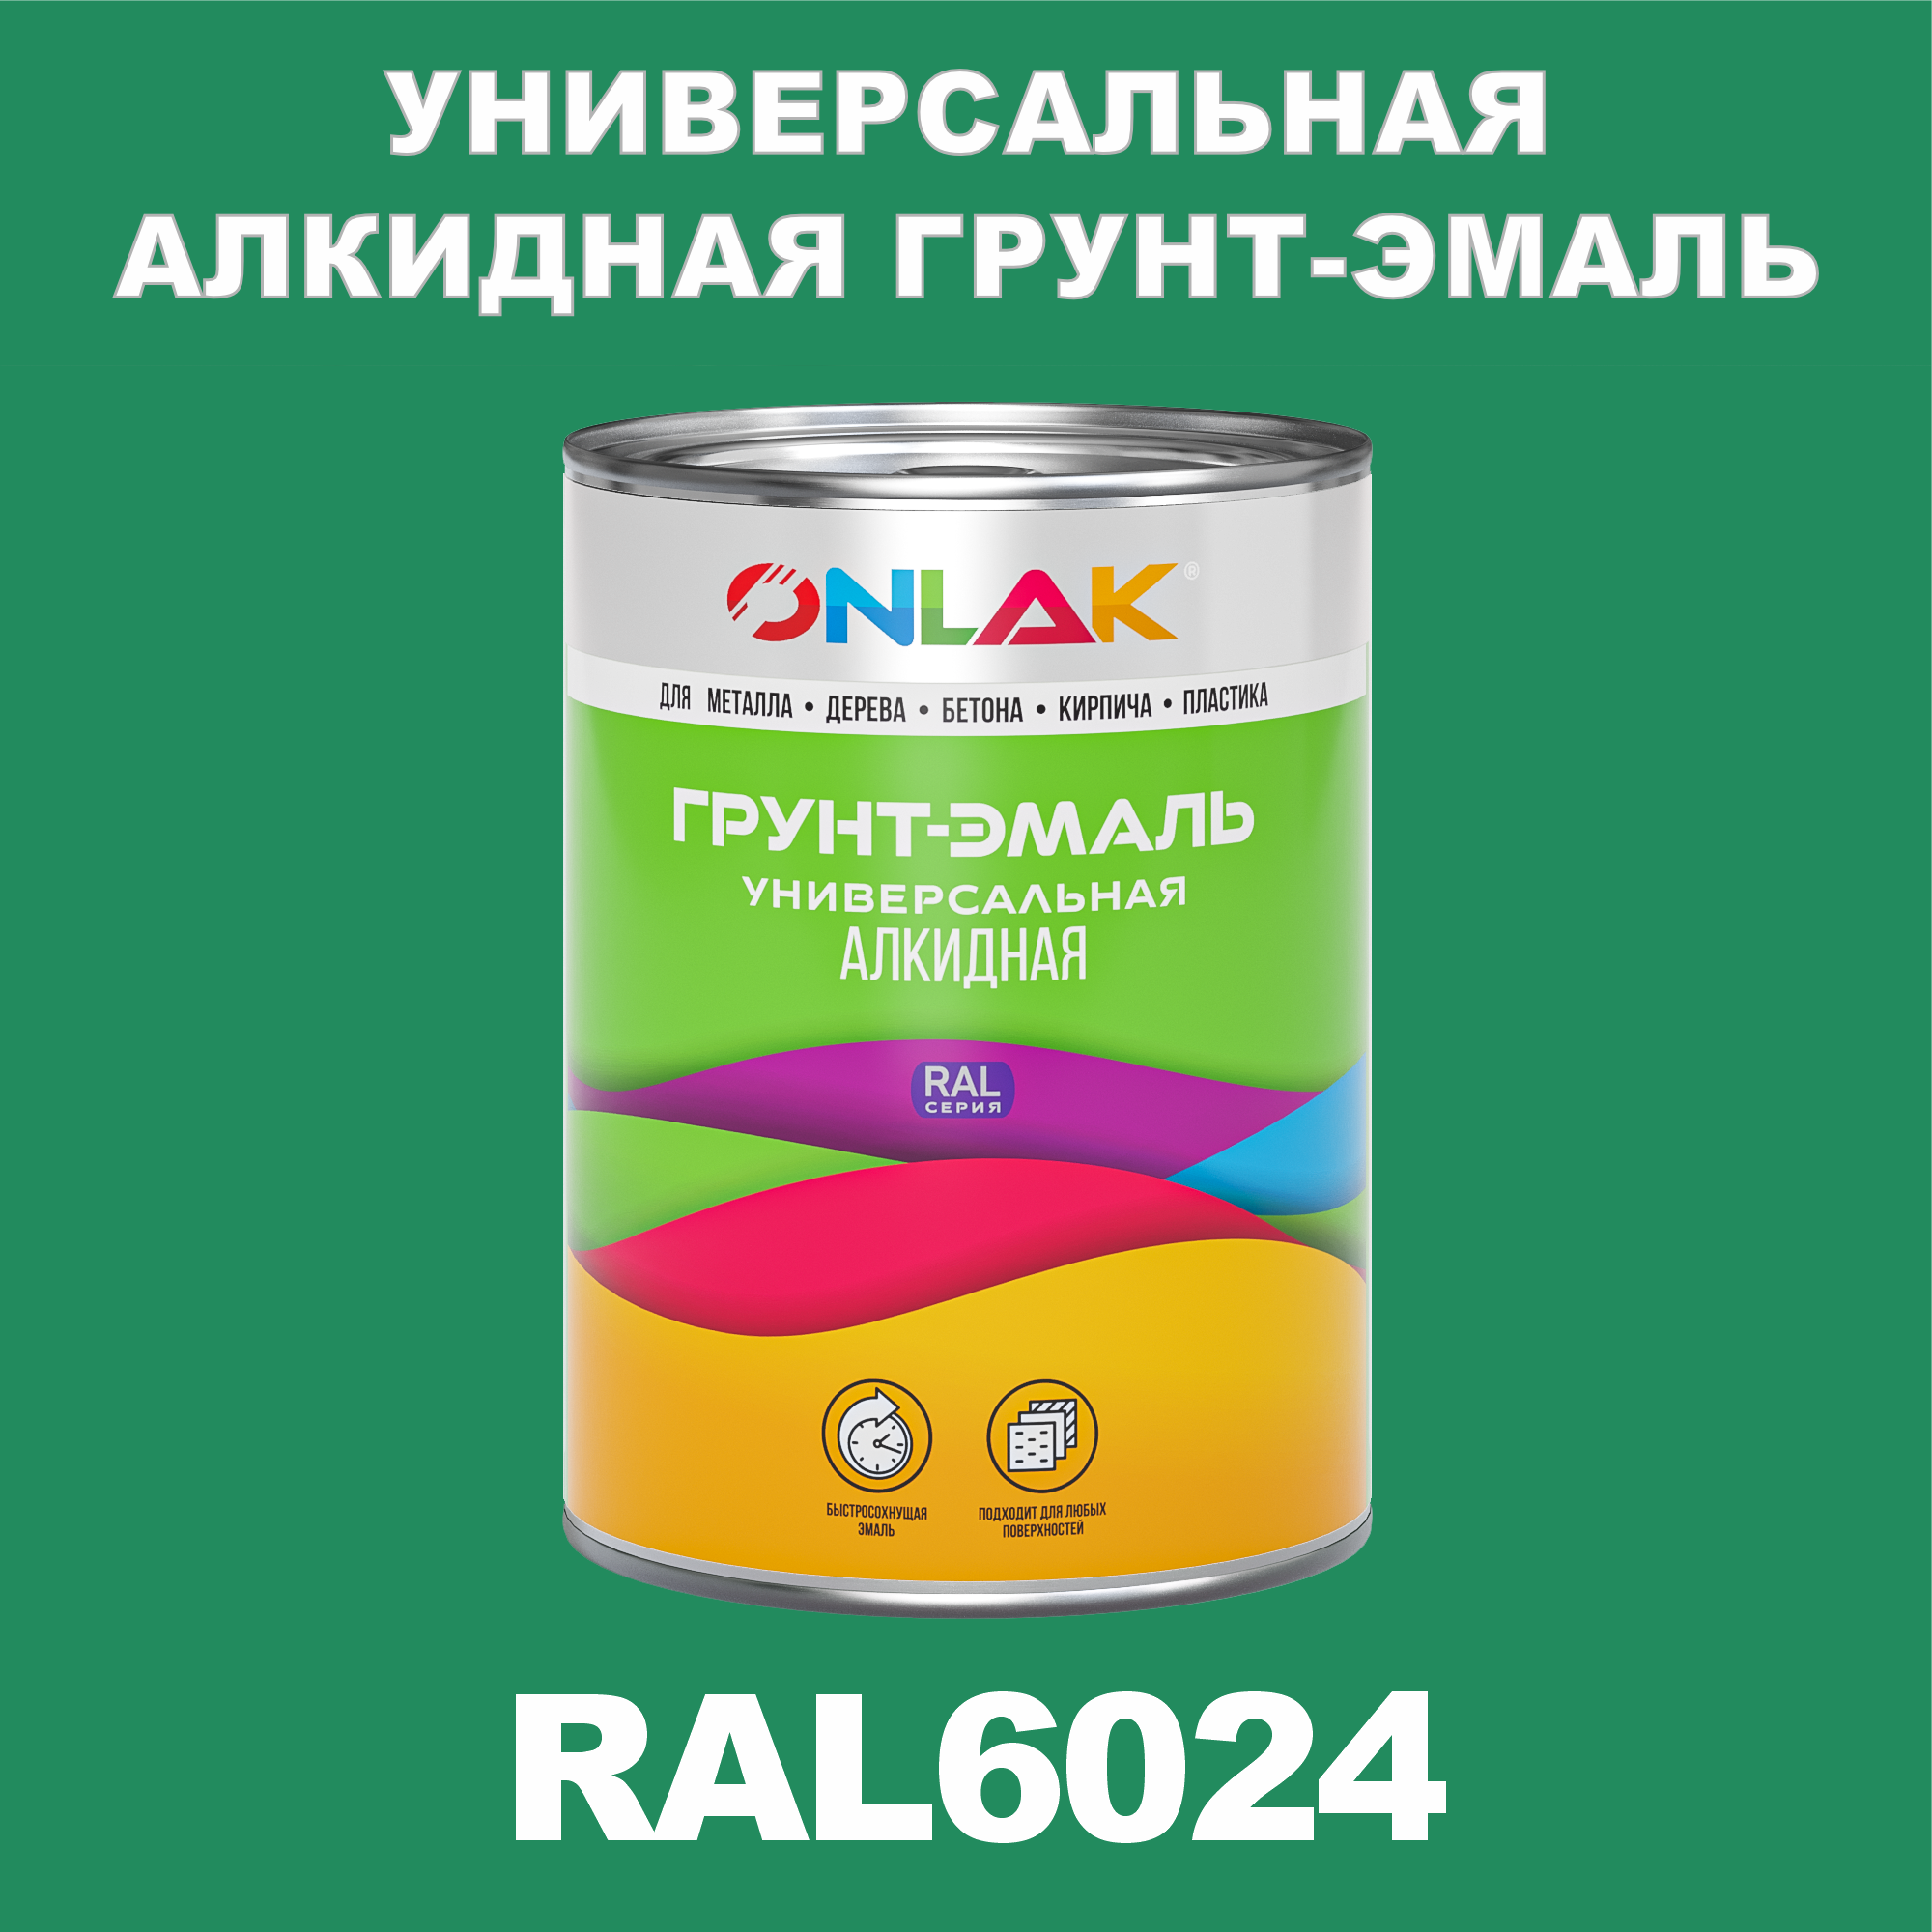 Грунт-эмаль ONLAK 1К RAL6024 антикоррозионная алкидная по металлу по ржавчине 1 кг грунт эмаль yollo по ржавчине алкидная зеленая 0 9 кг